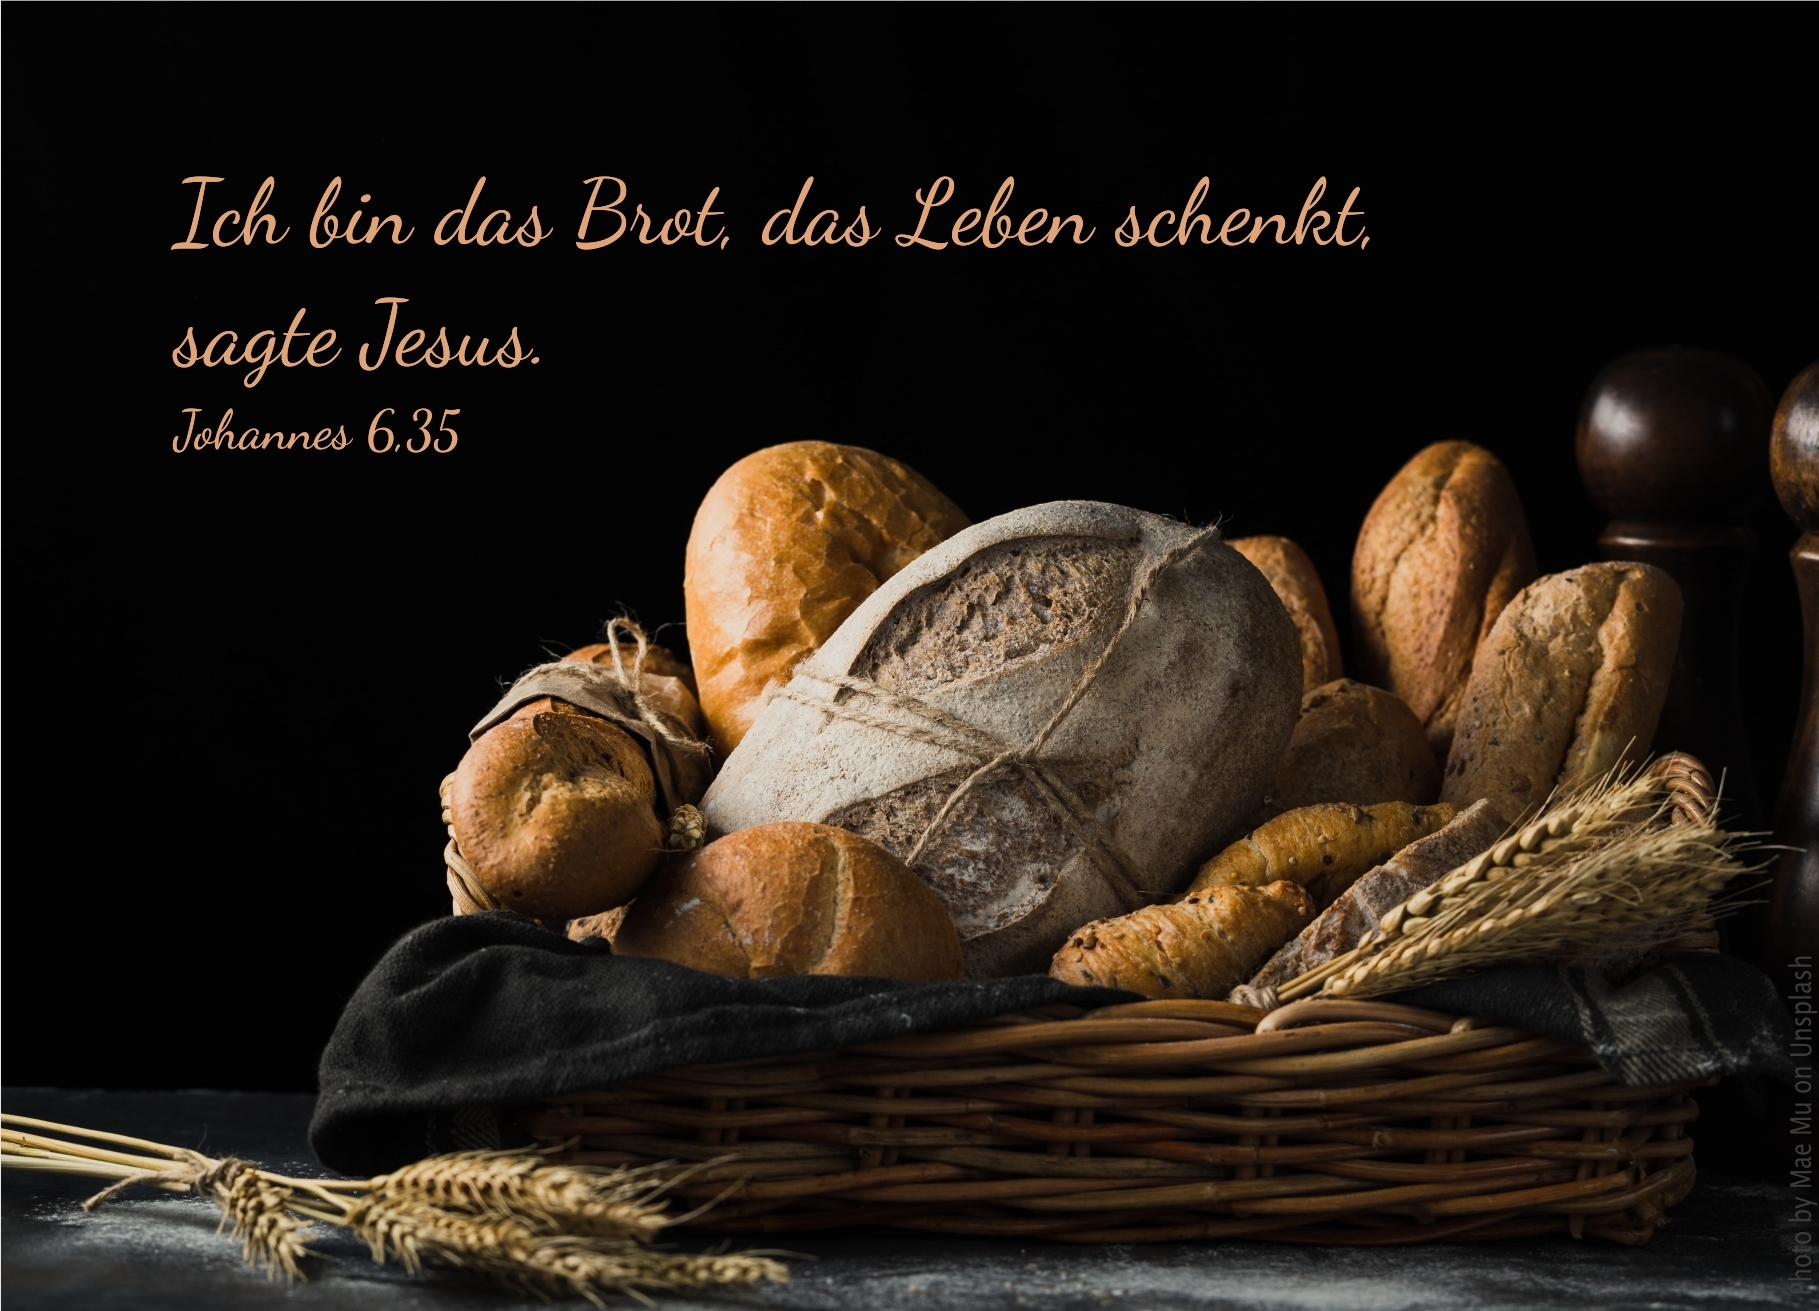 alt="brotkorb_erwartet_bibelhoerbuch_das_brot_das_leben_gibt"